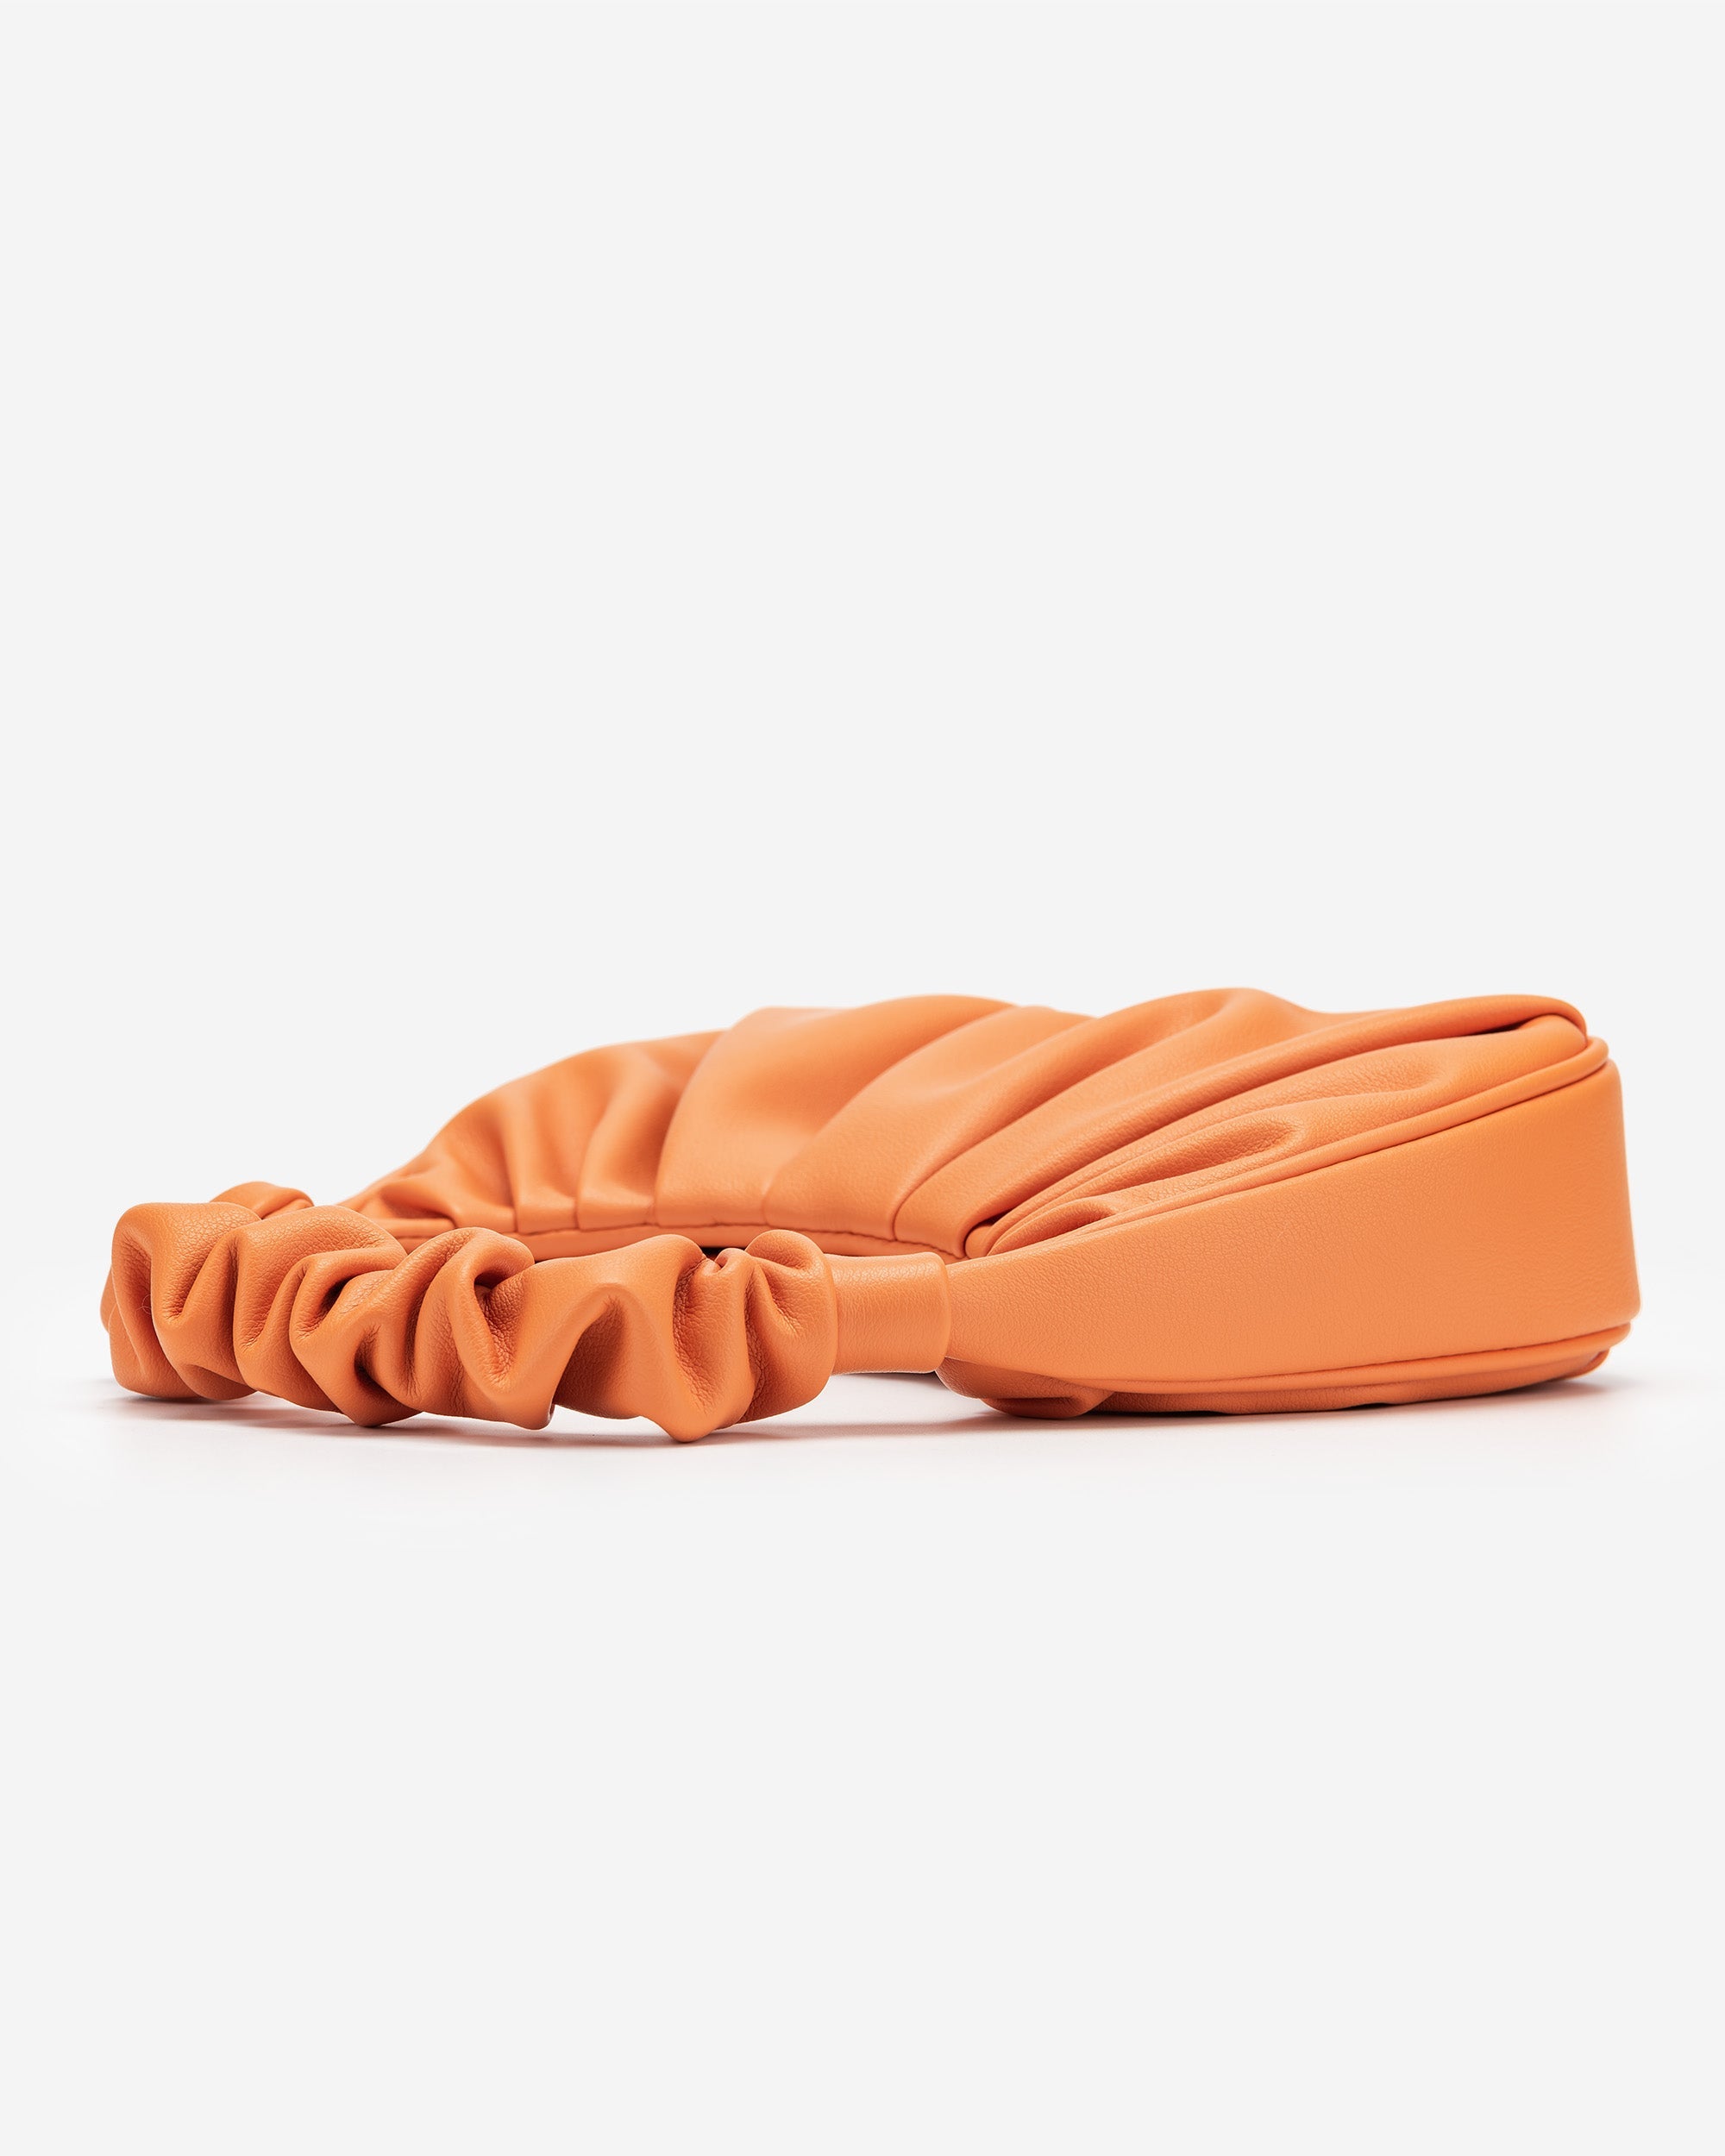 Gabbi 手提包 - 橙色